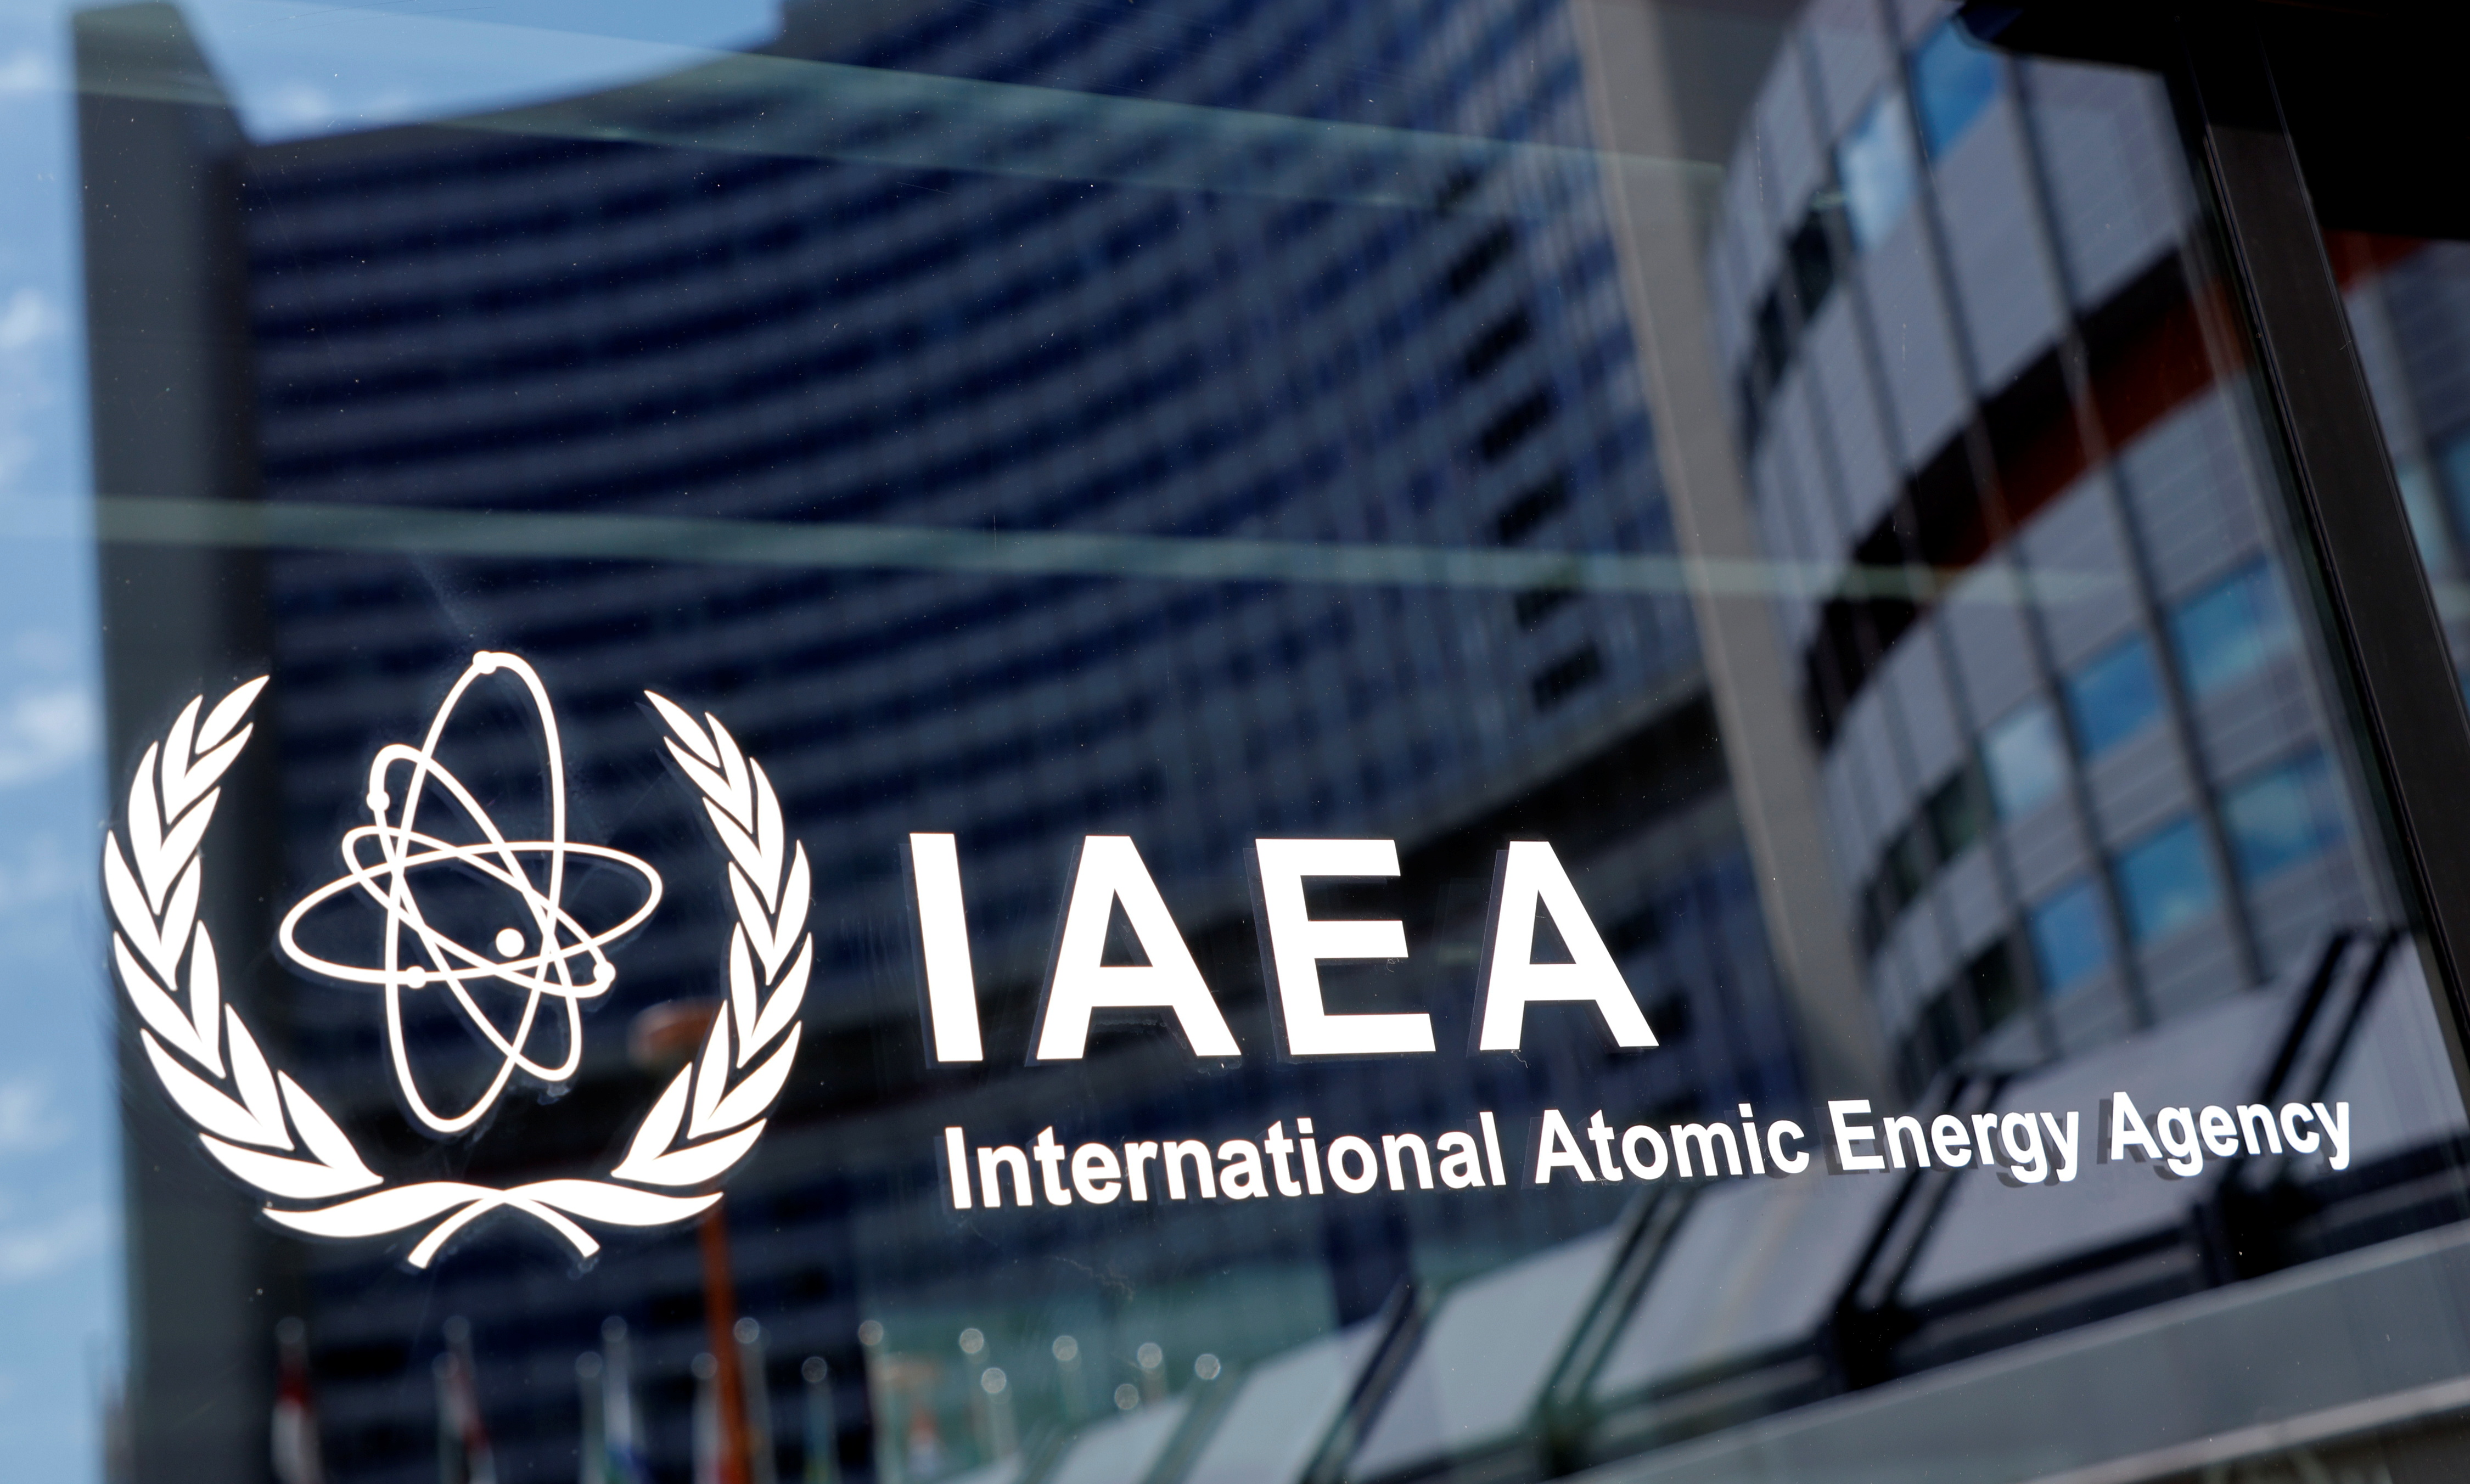 Tchernobyl : épuisé, le personnel du site nucléaire ne fait plus les réparations de sécurité (AIEA)